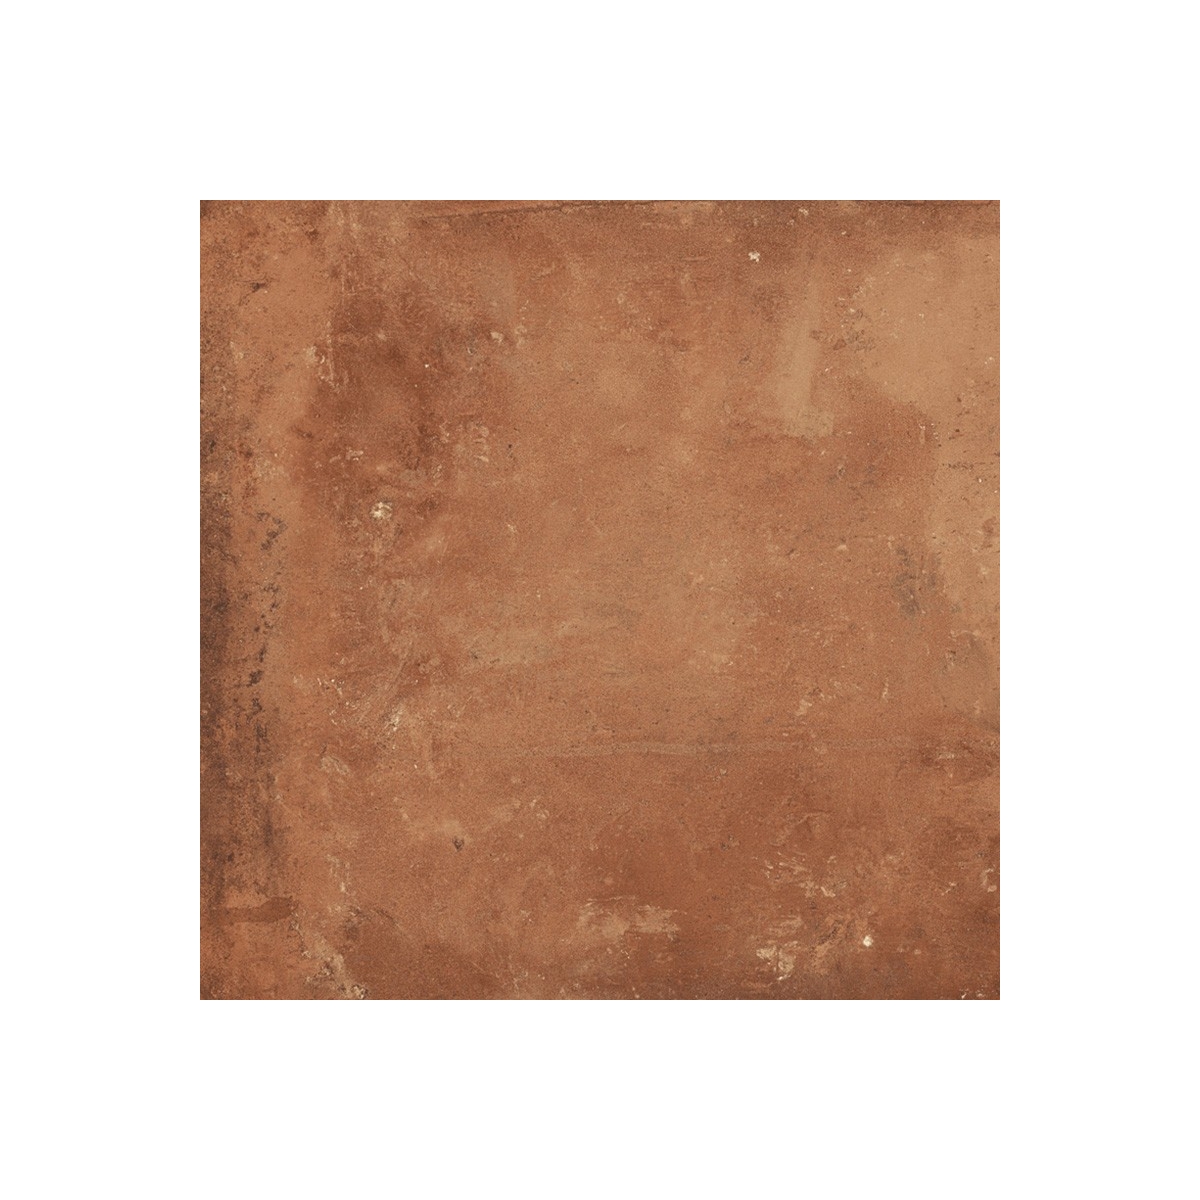 Pavimentos imitación hidráulico Gaya Fores - Rustic Cotto 33,15x33,15 cm (caja 1.32 m2)